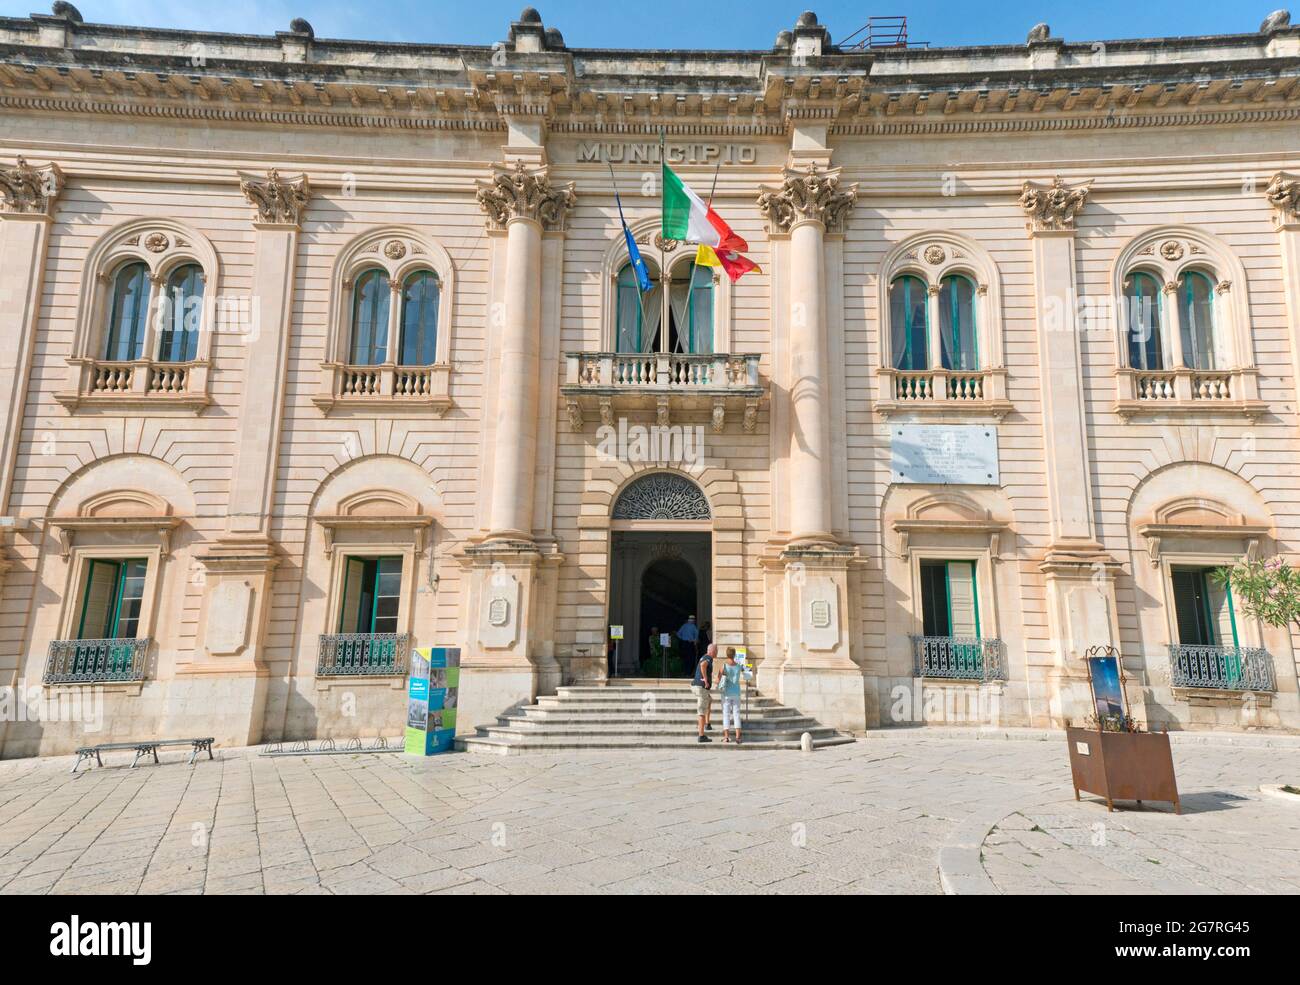 Il municipio della città barocca di Scicli. Ragusa, Sicilia, Italia Foto Stock